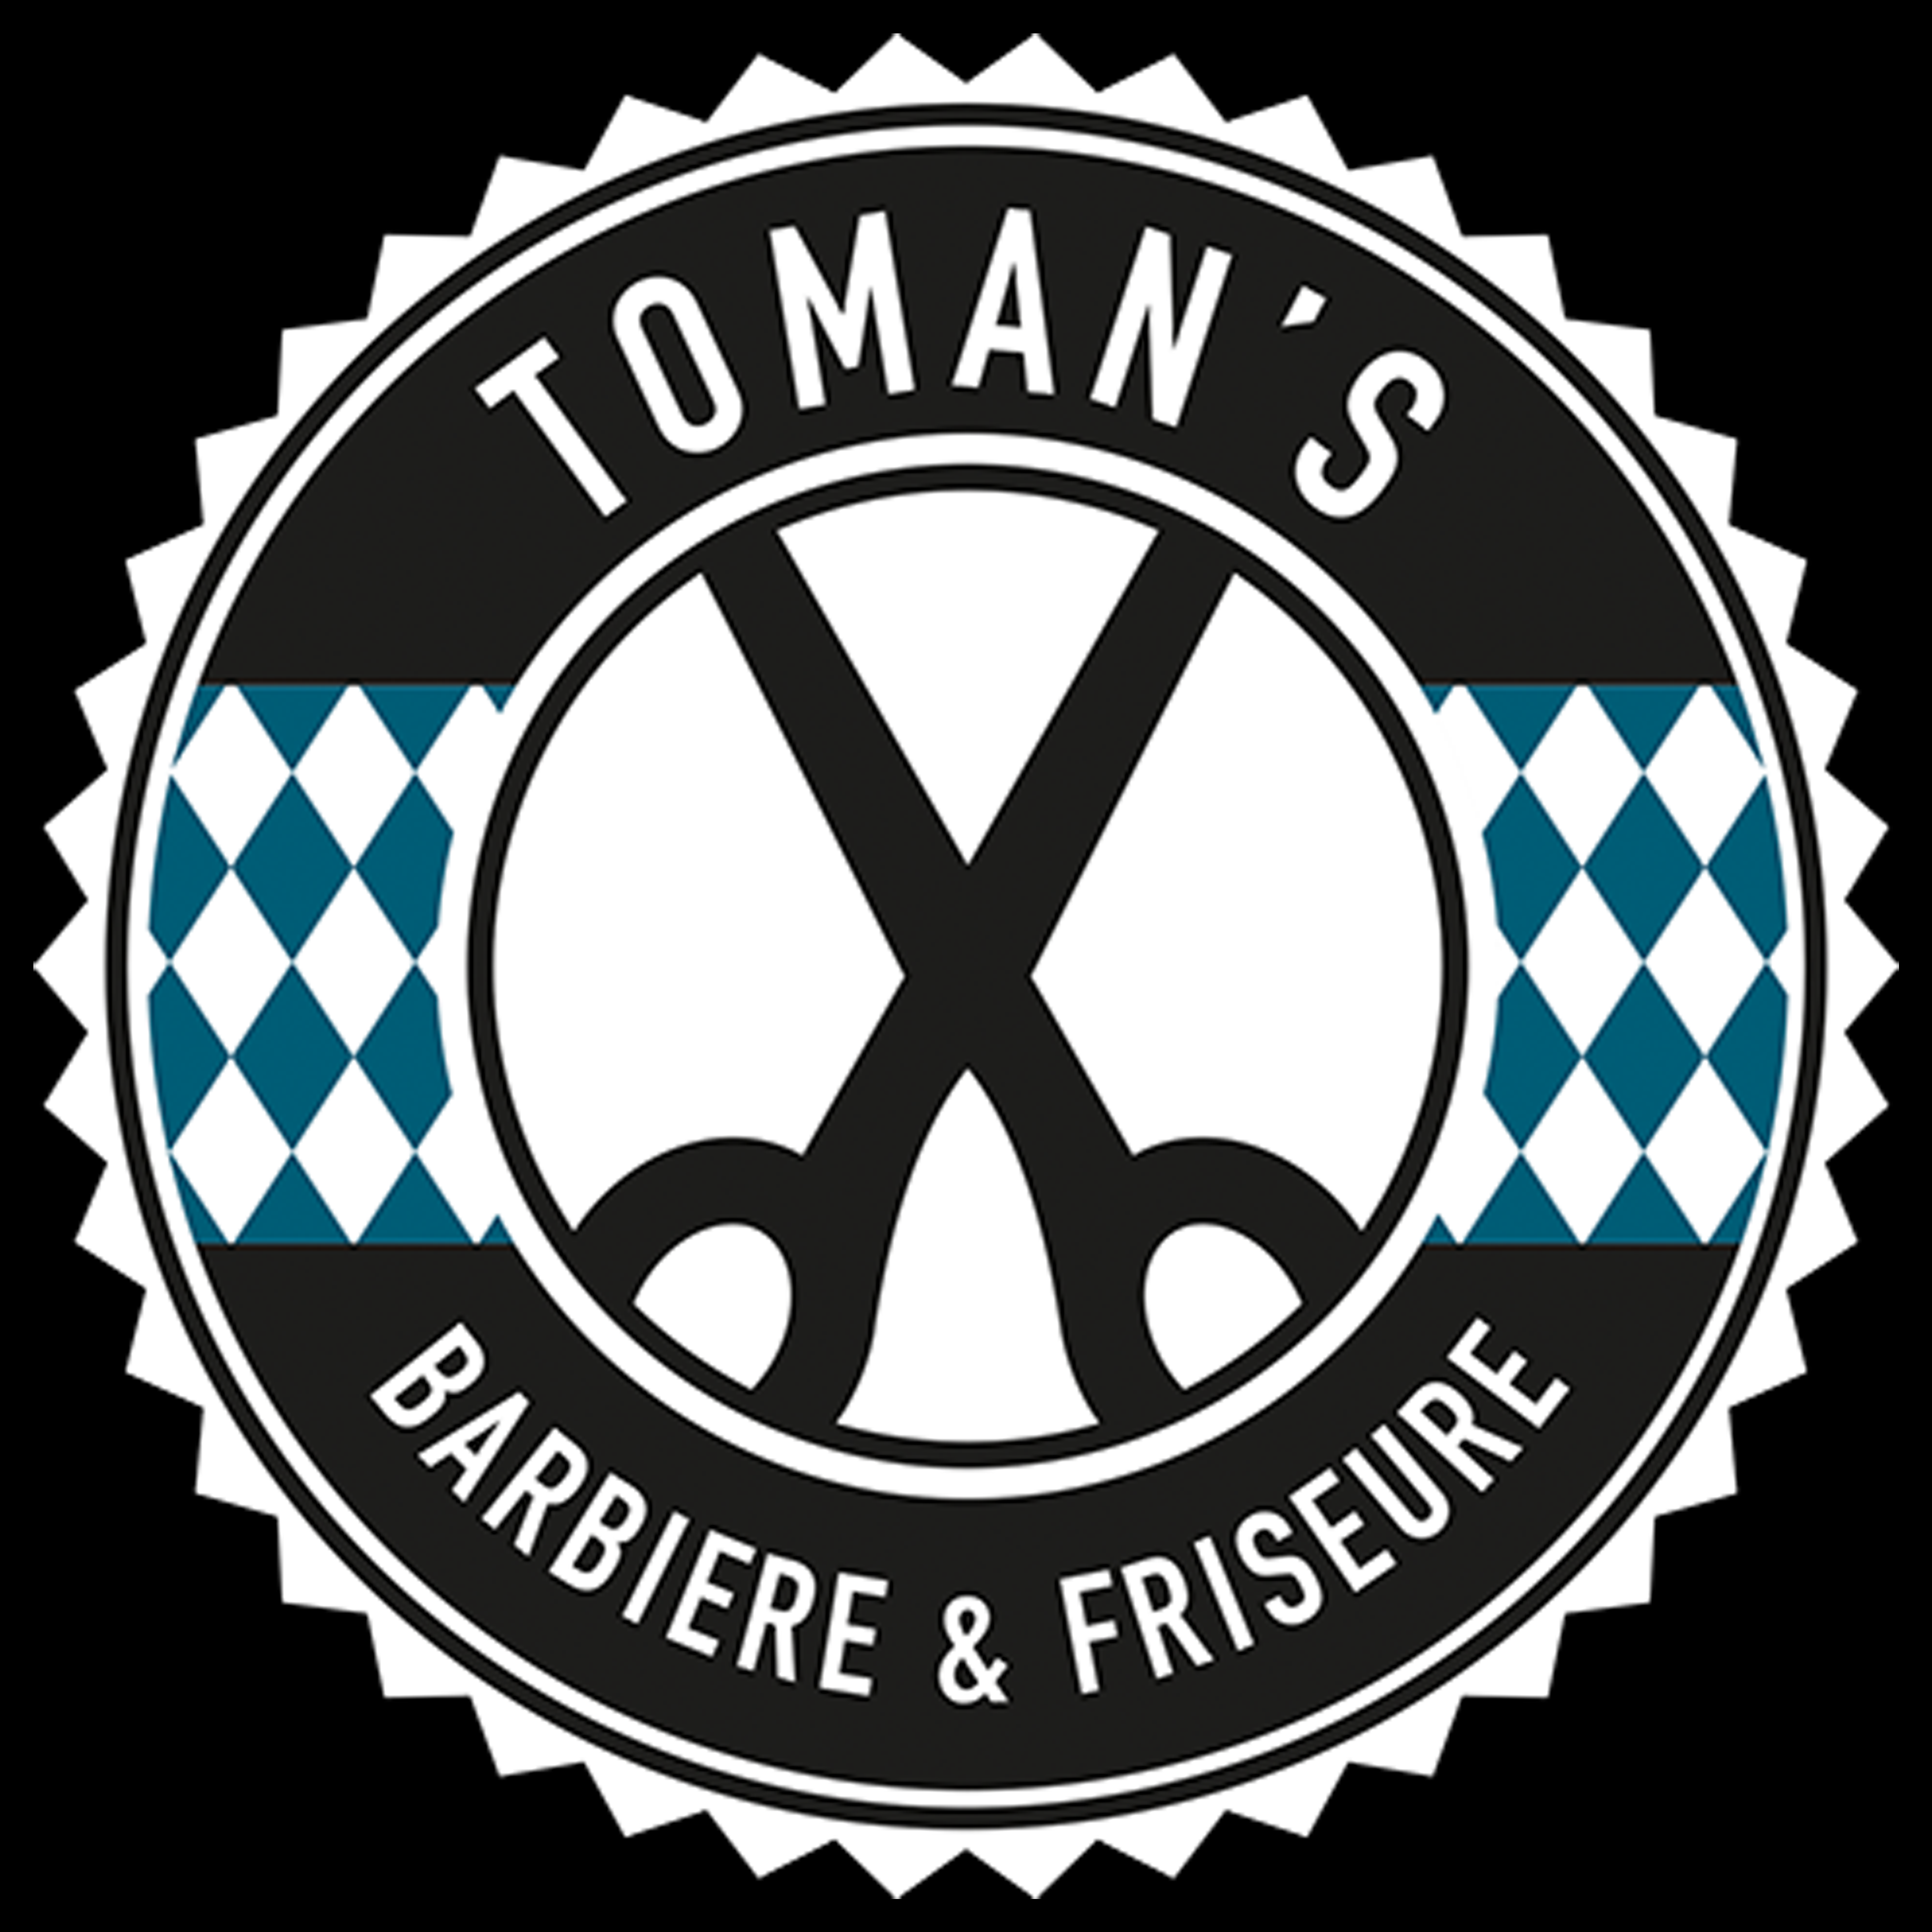 TOMANS Barbiere & Friseure